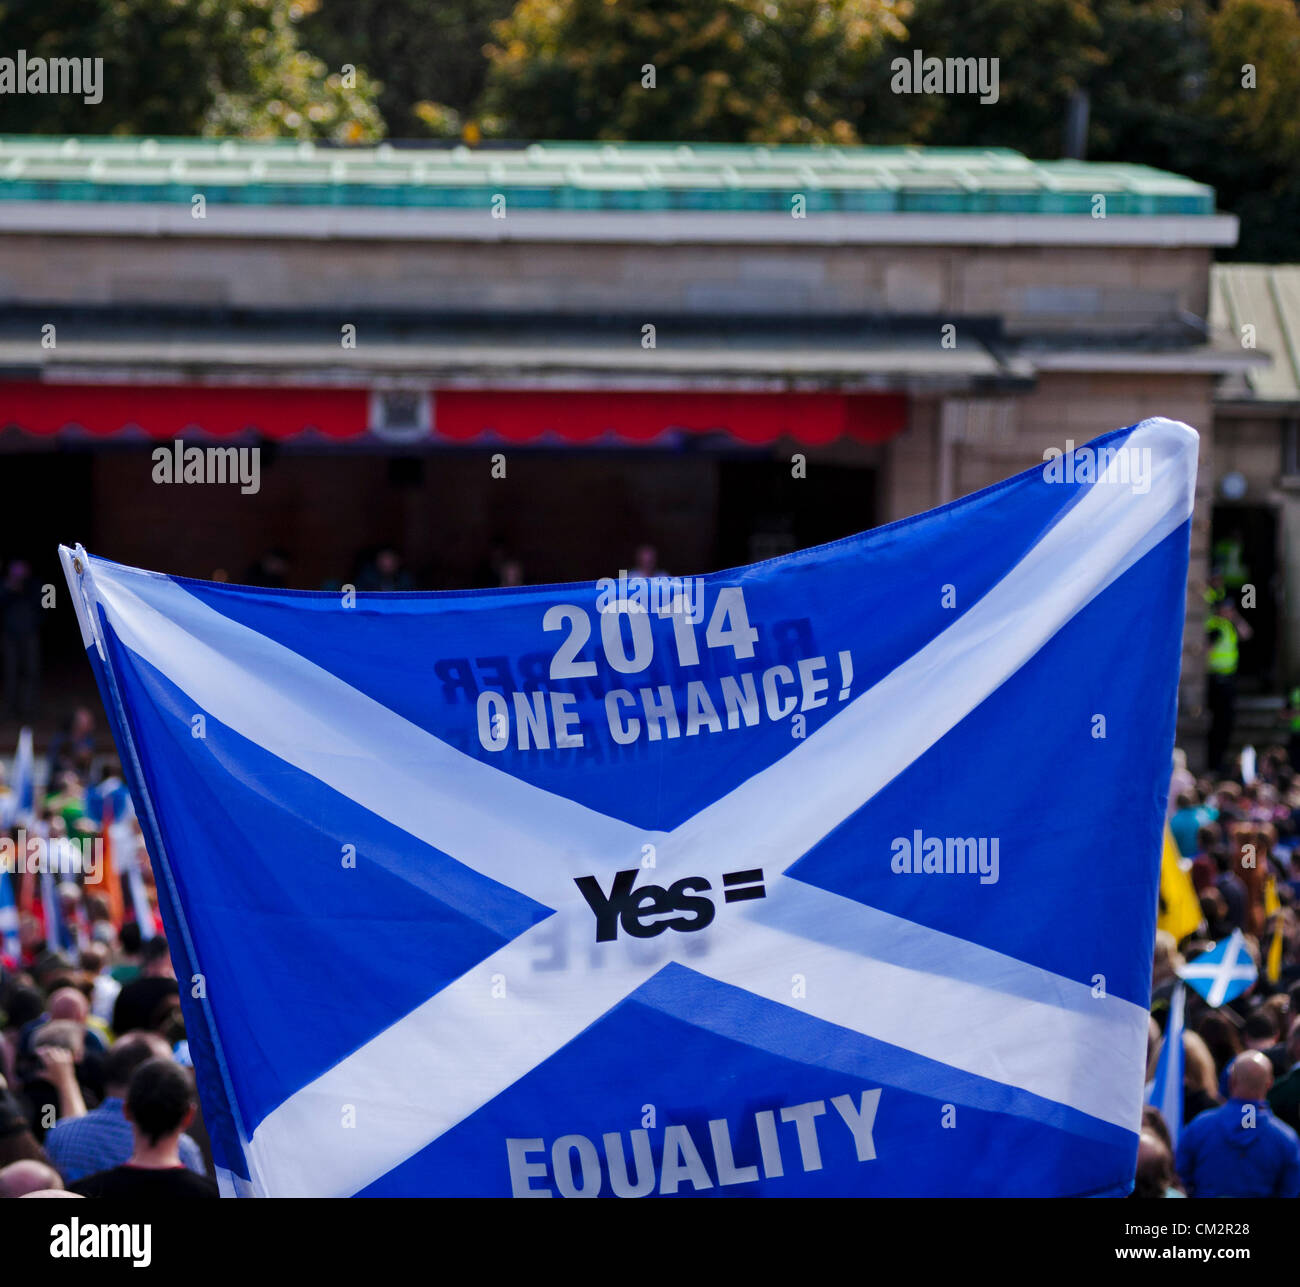 22 septembre 2012, Édimbourg, Royaume-Uni. environ cinq mille personnes ont participé à un événement à Édimbourg visant à démontrer le soutien à l'indépendance. Les deux jeunes et vieux forme sautoires et lion drapeaux réunis dans les jardins de Princes Street. Le rallye a été organisé sous la bannière de l'indépendance de l'Ecosse et ne fait pas partie de la campagne officielle Oui l'Ecosse. Banque D'Images